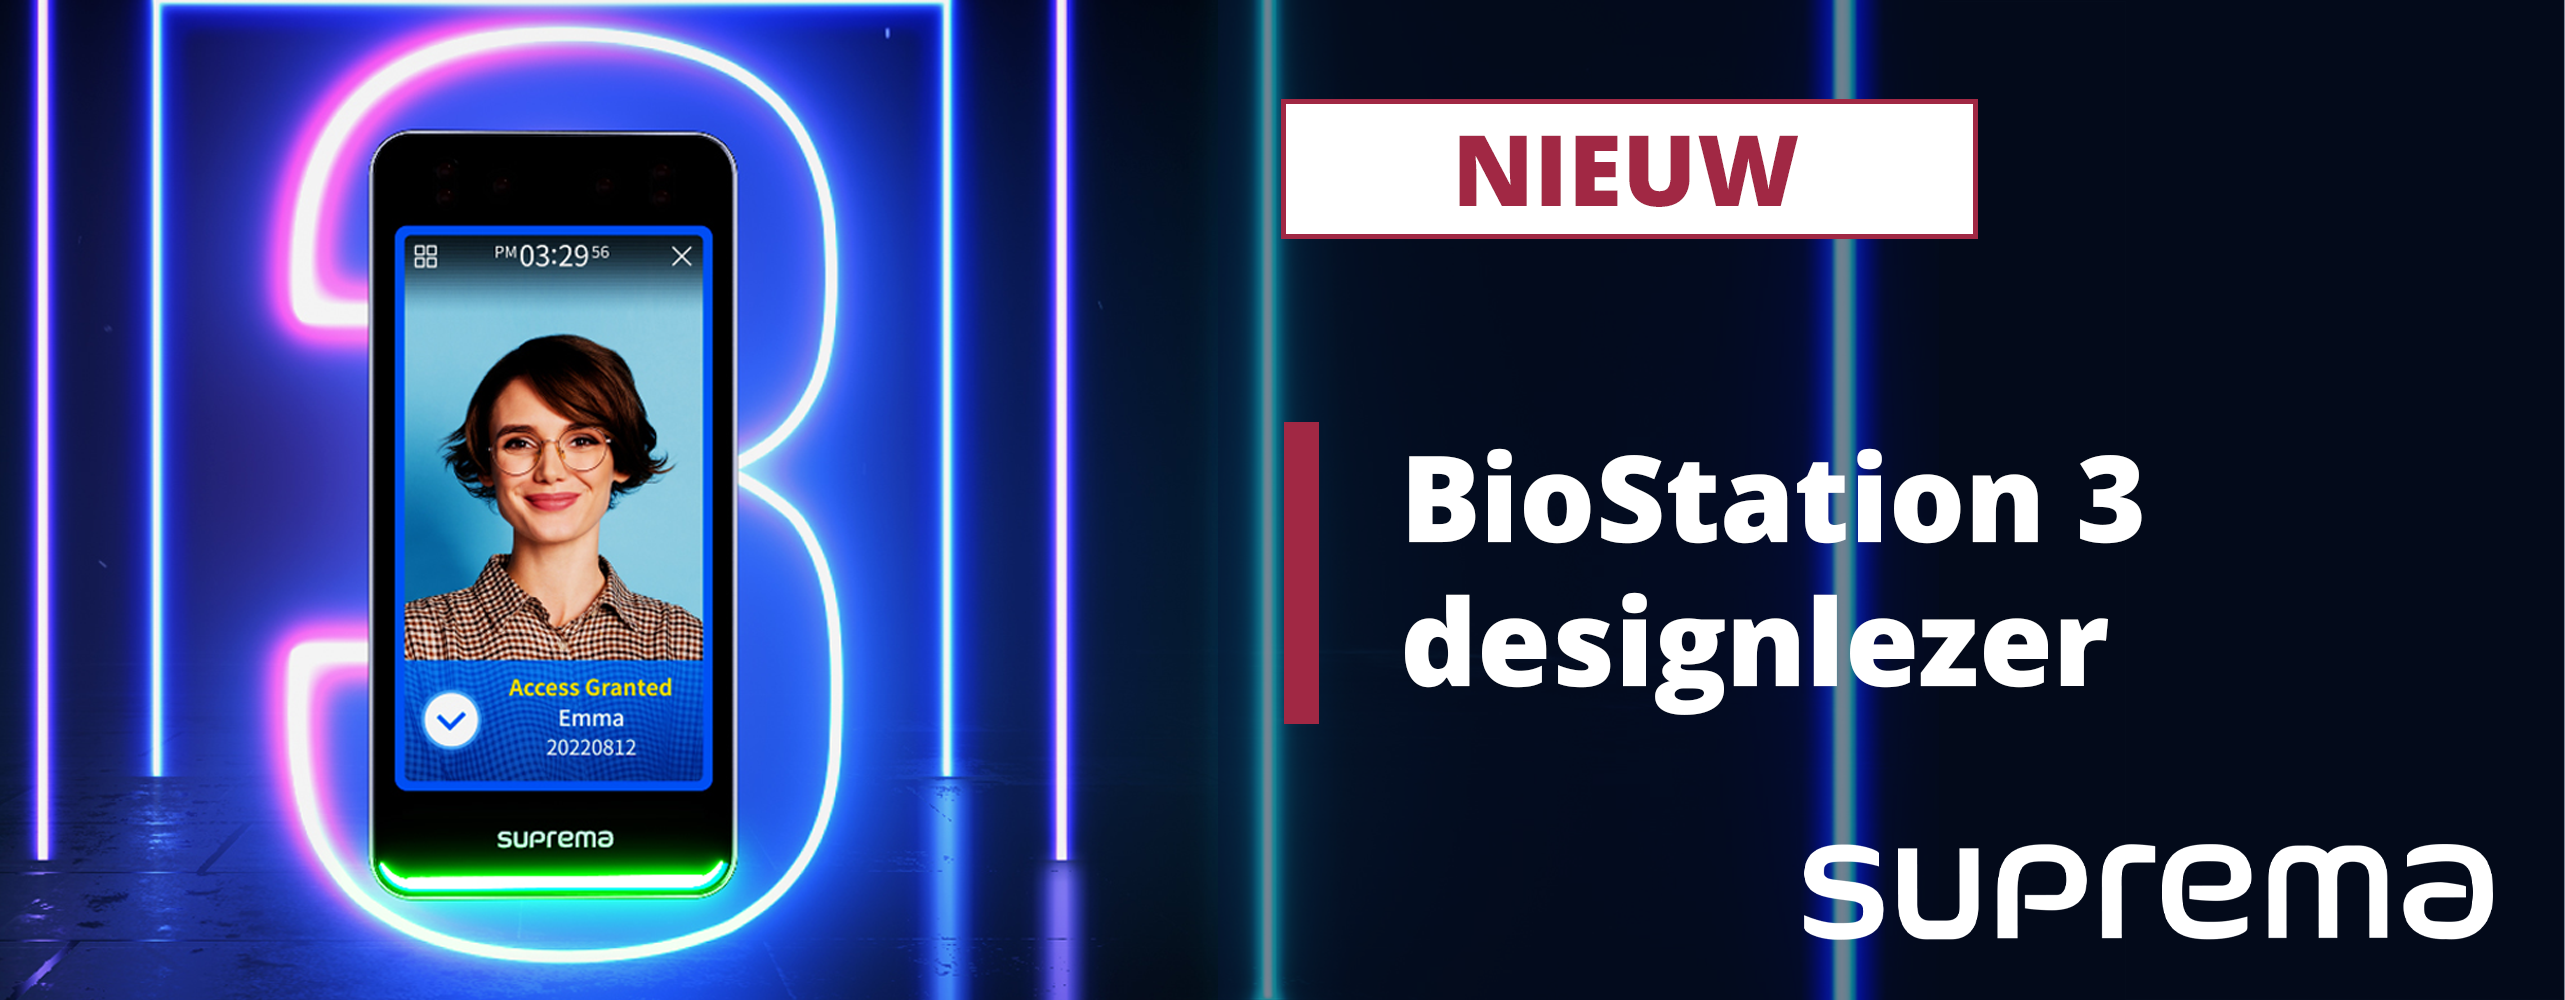 Nieuw: BioStation 3 designlezer van Suprema